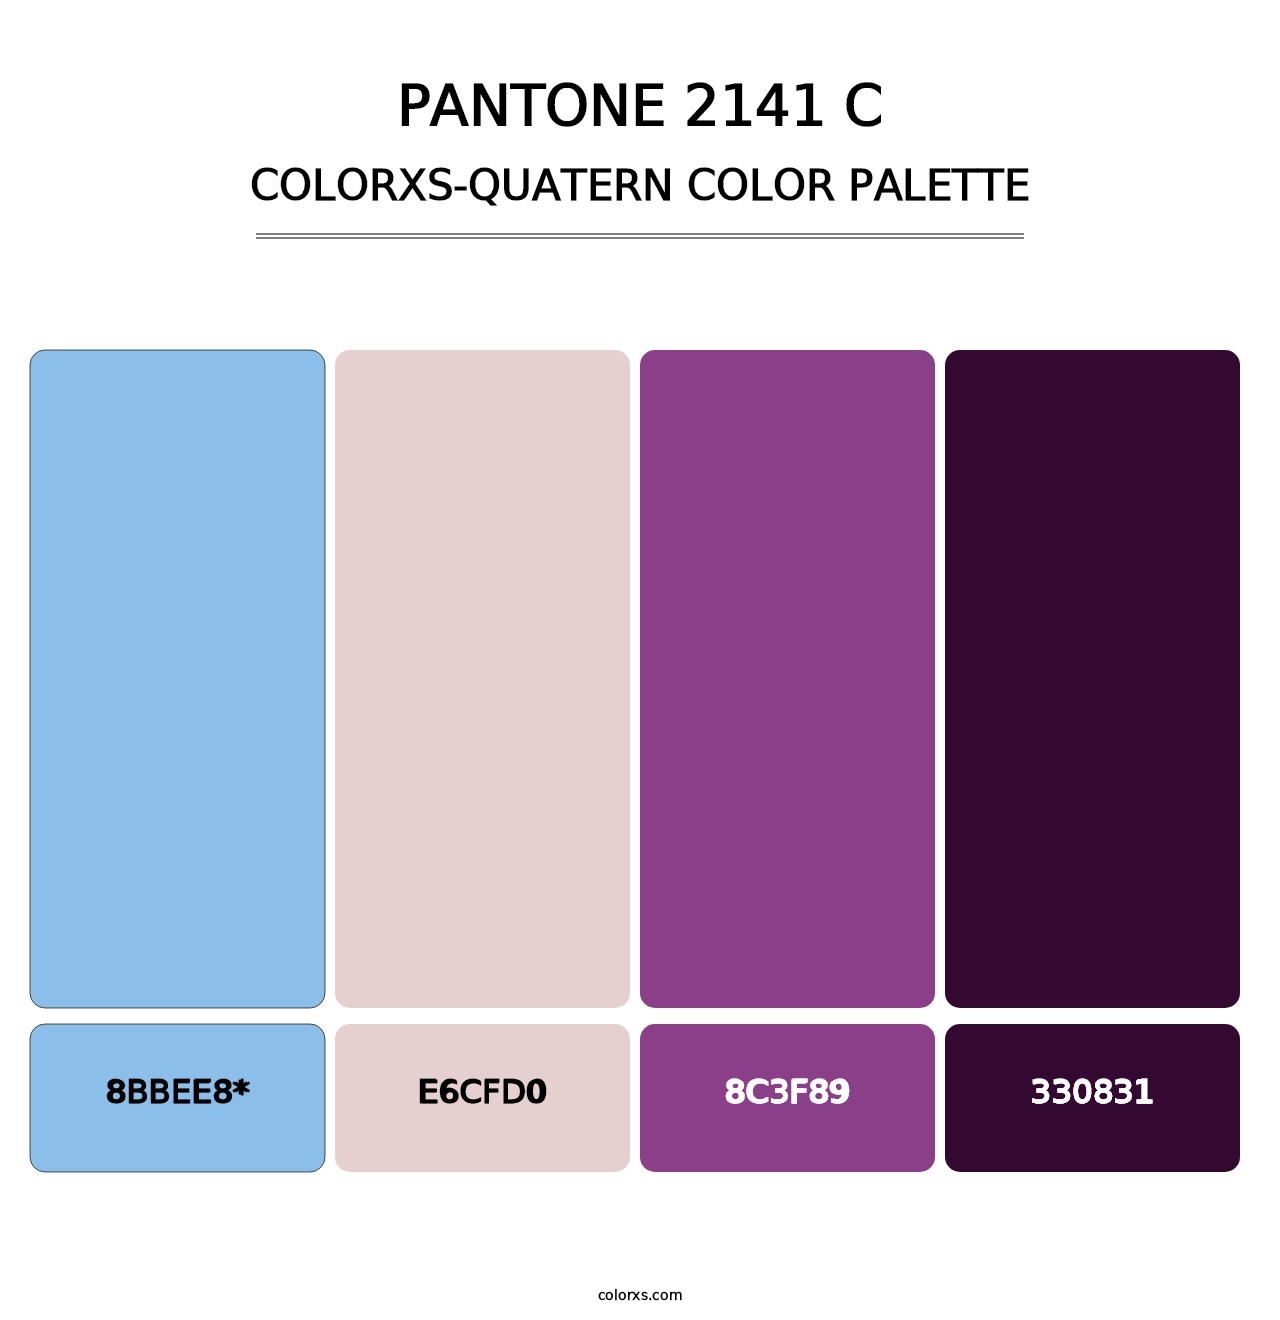 PANTONE 2141 C - Colorxs Quatern Palette